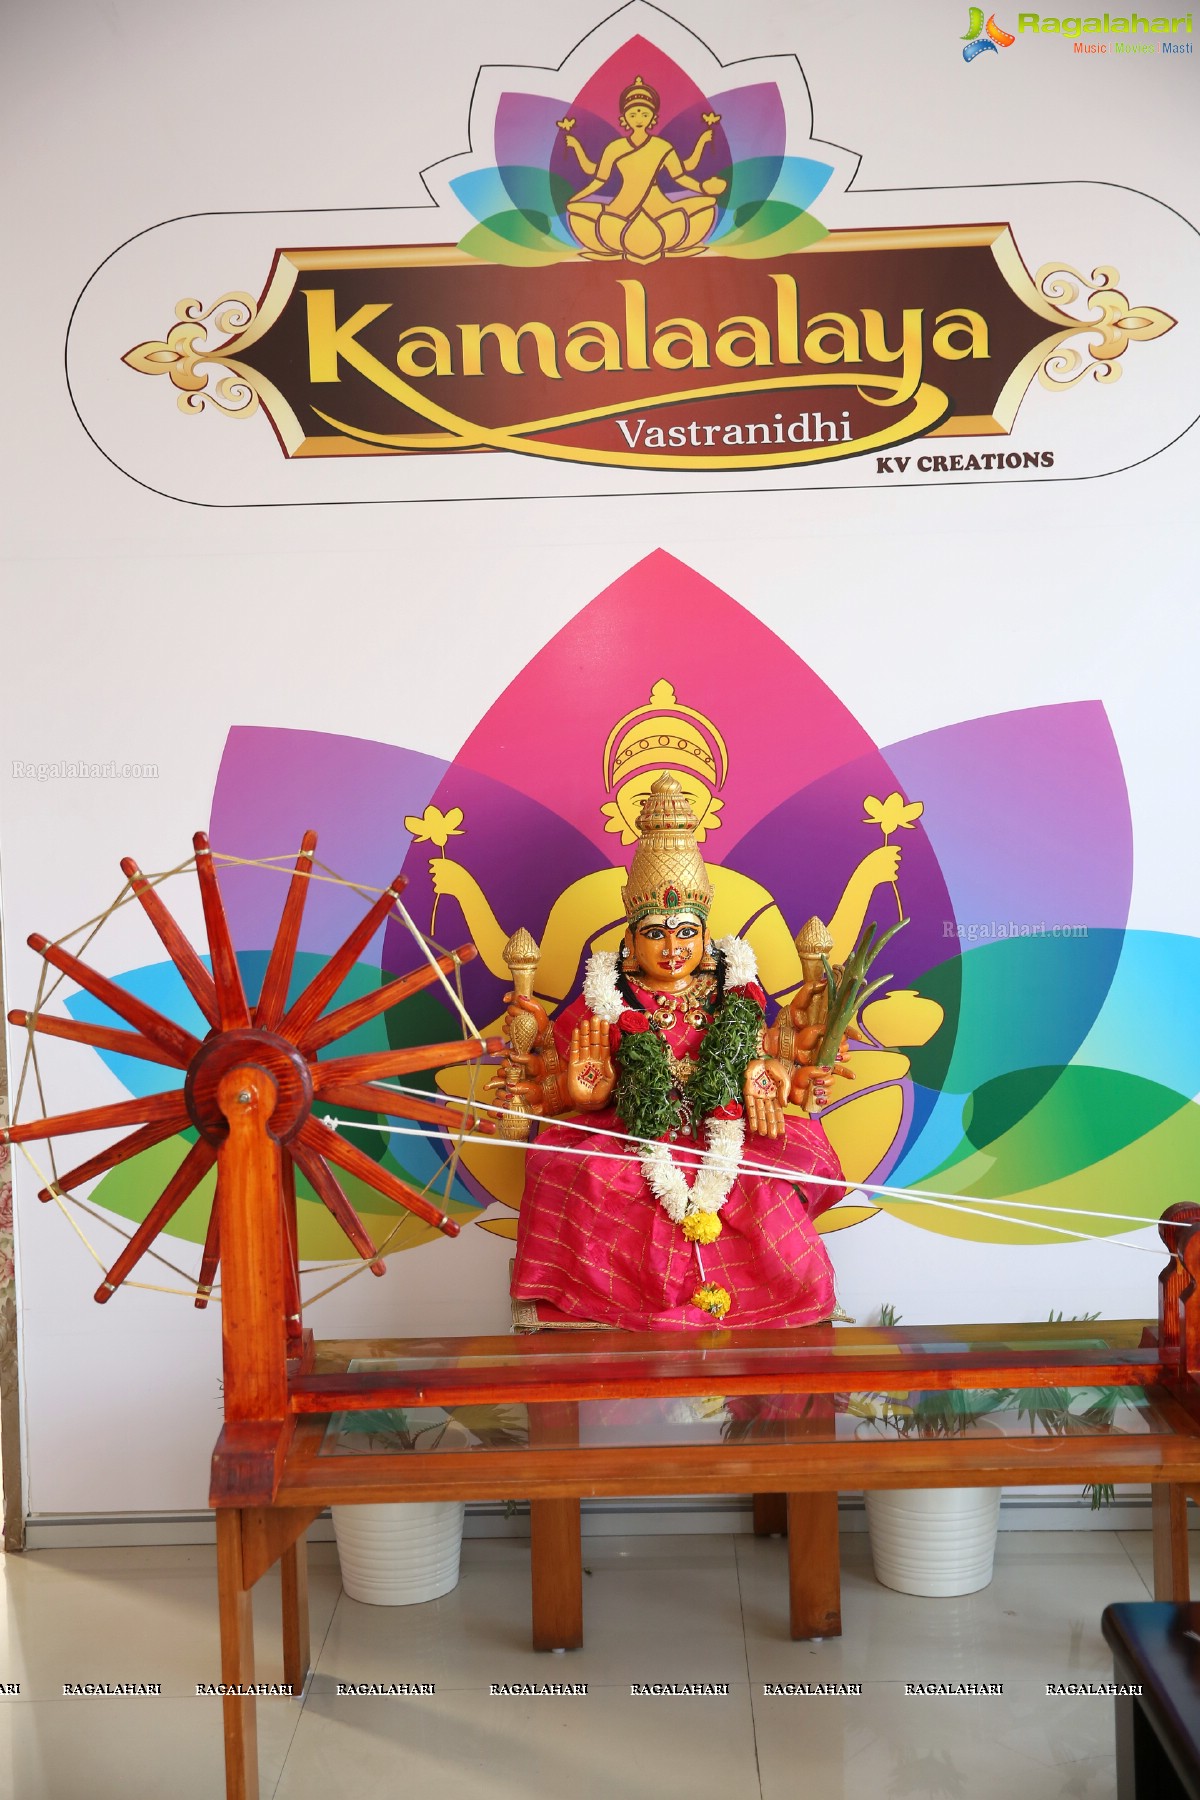 Kamalaalaya Vastranidhi Gets a Golden Flourish at Jubilee Hills, Hyderabad